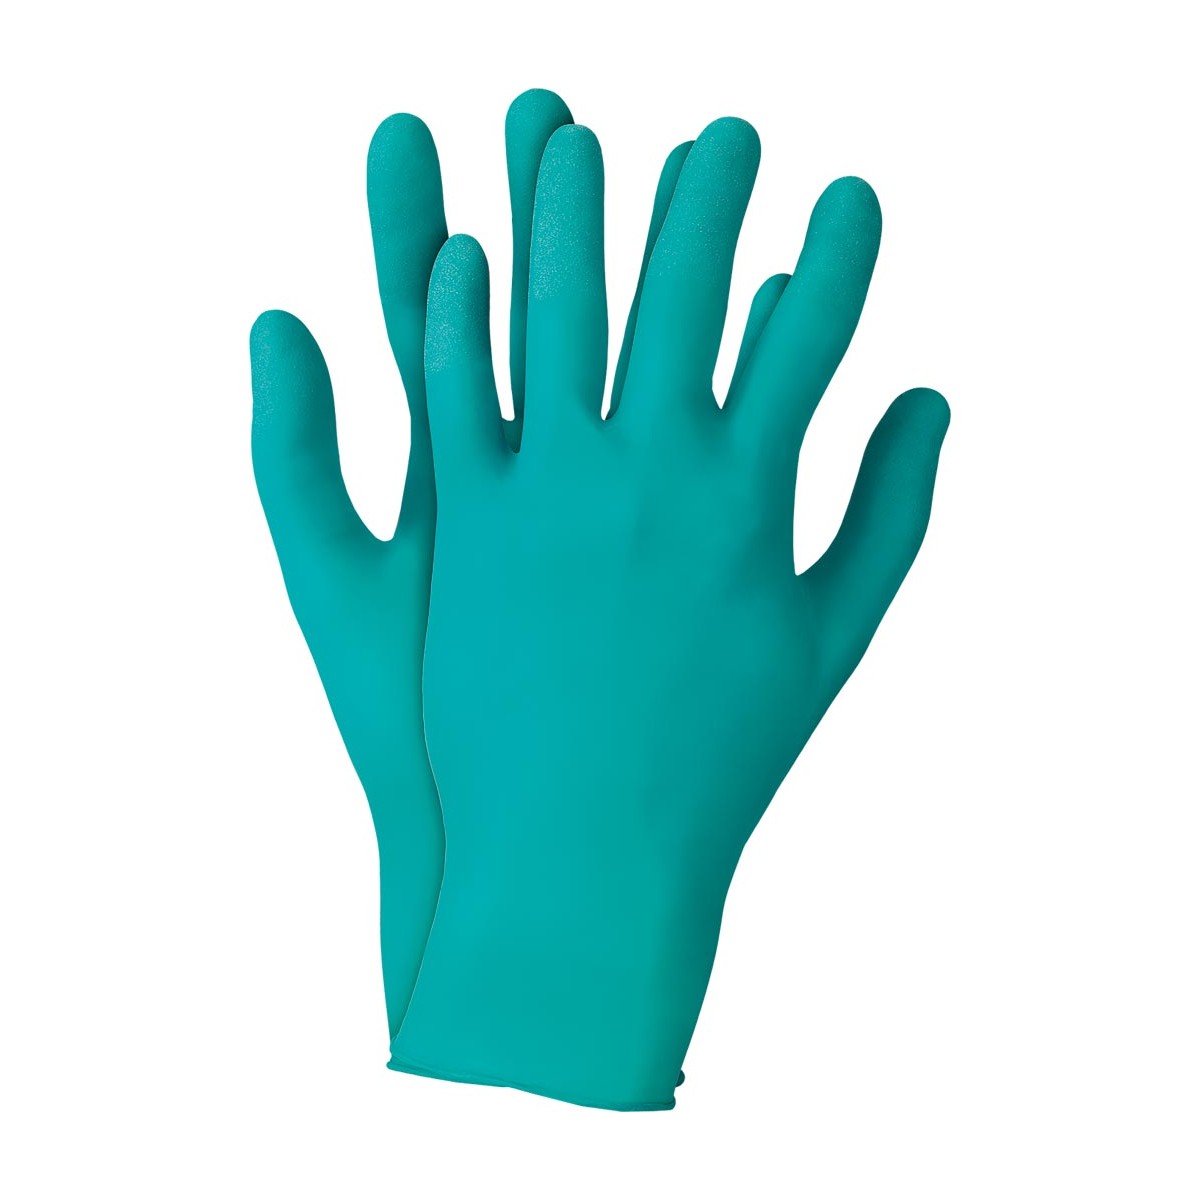 Rękawice nitrylowe ochronne antystatyczne Touch N Tuff 92-500 r. S - XL